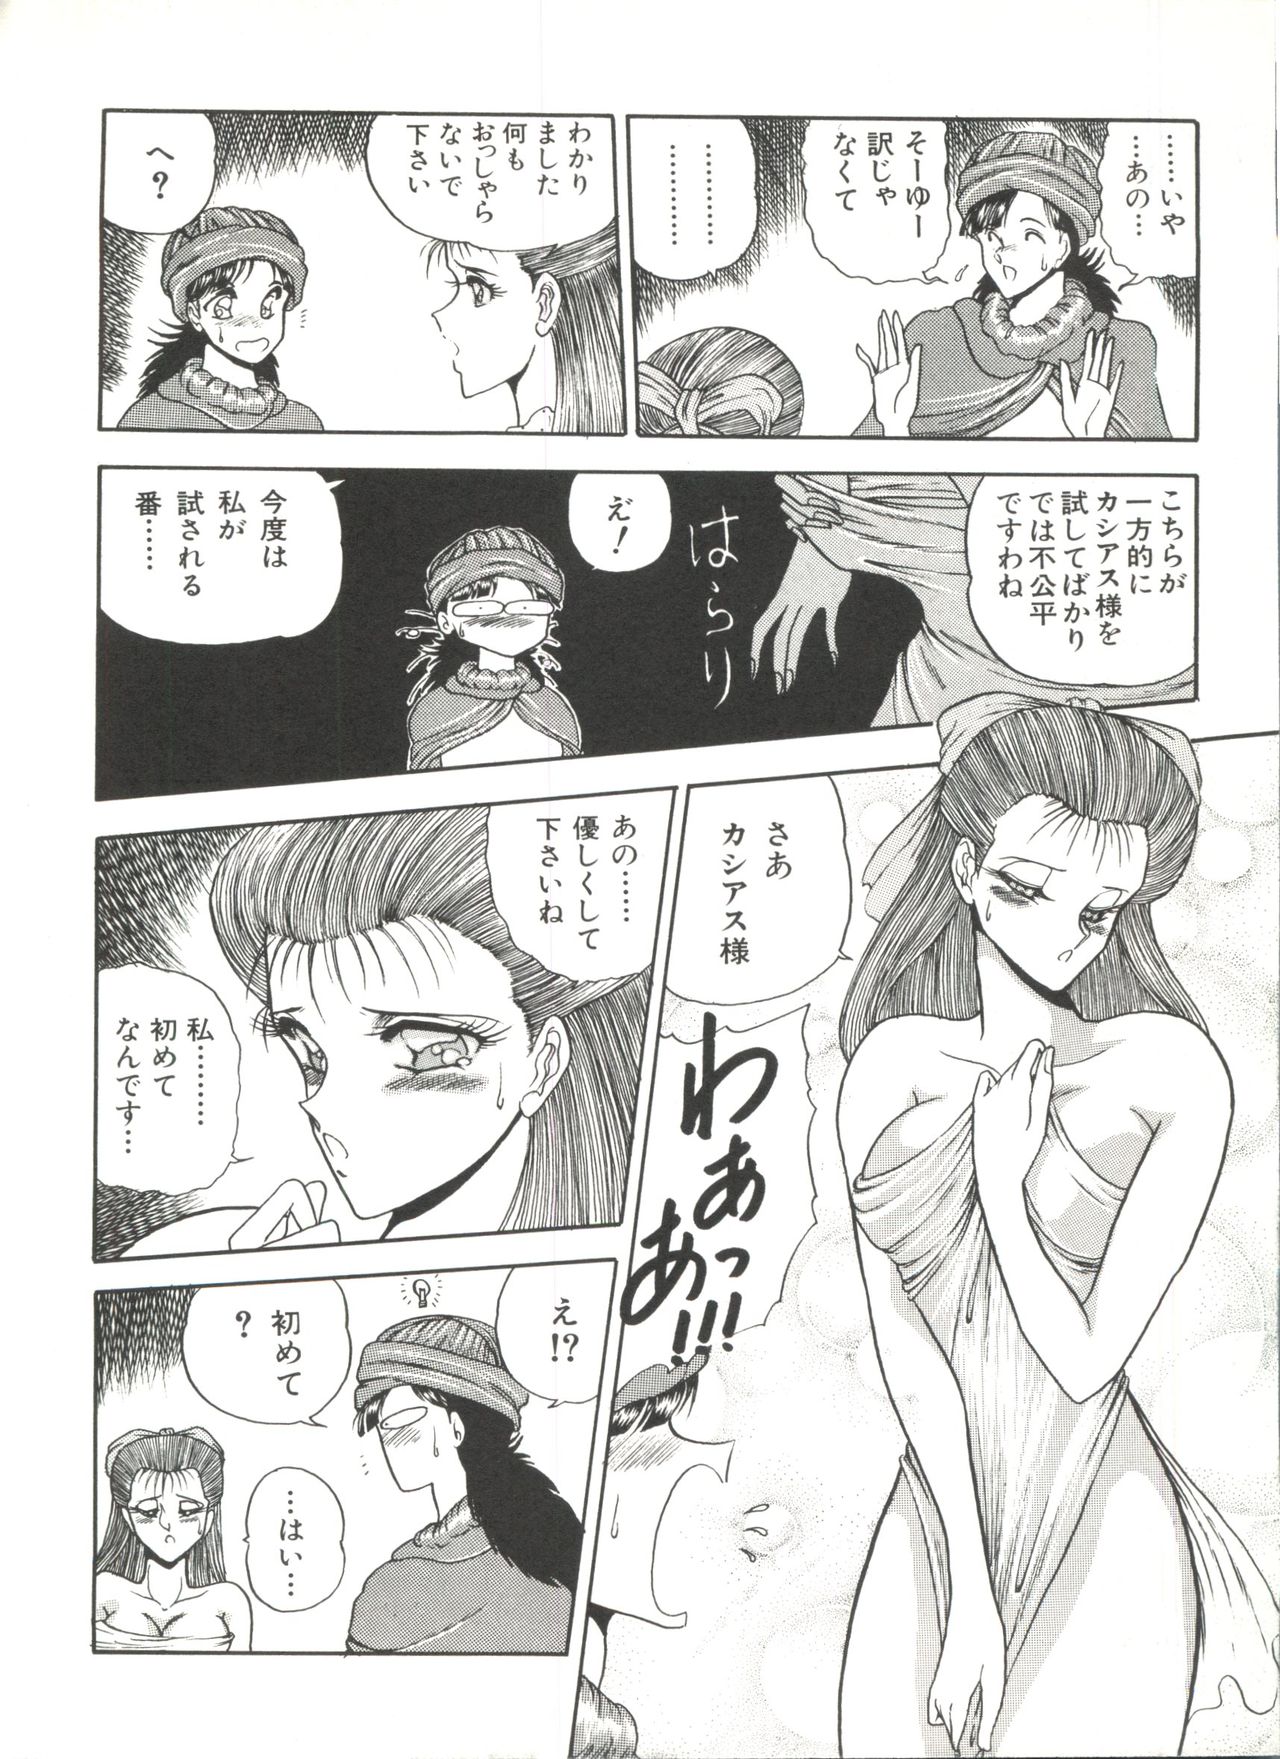 [Anthology] Bishoujo Doujinshi Anthology 1 (Various) page 50 full